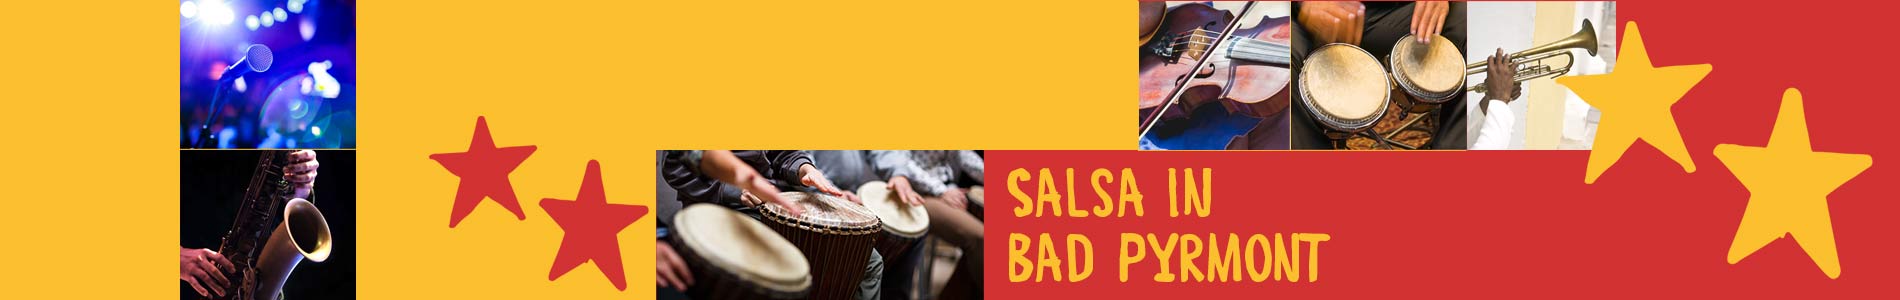 Salsa in Bad Pyrmont – Salsa lernen und tanzen, Tanzkurse, Partys, Veranstaltungen